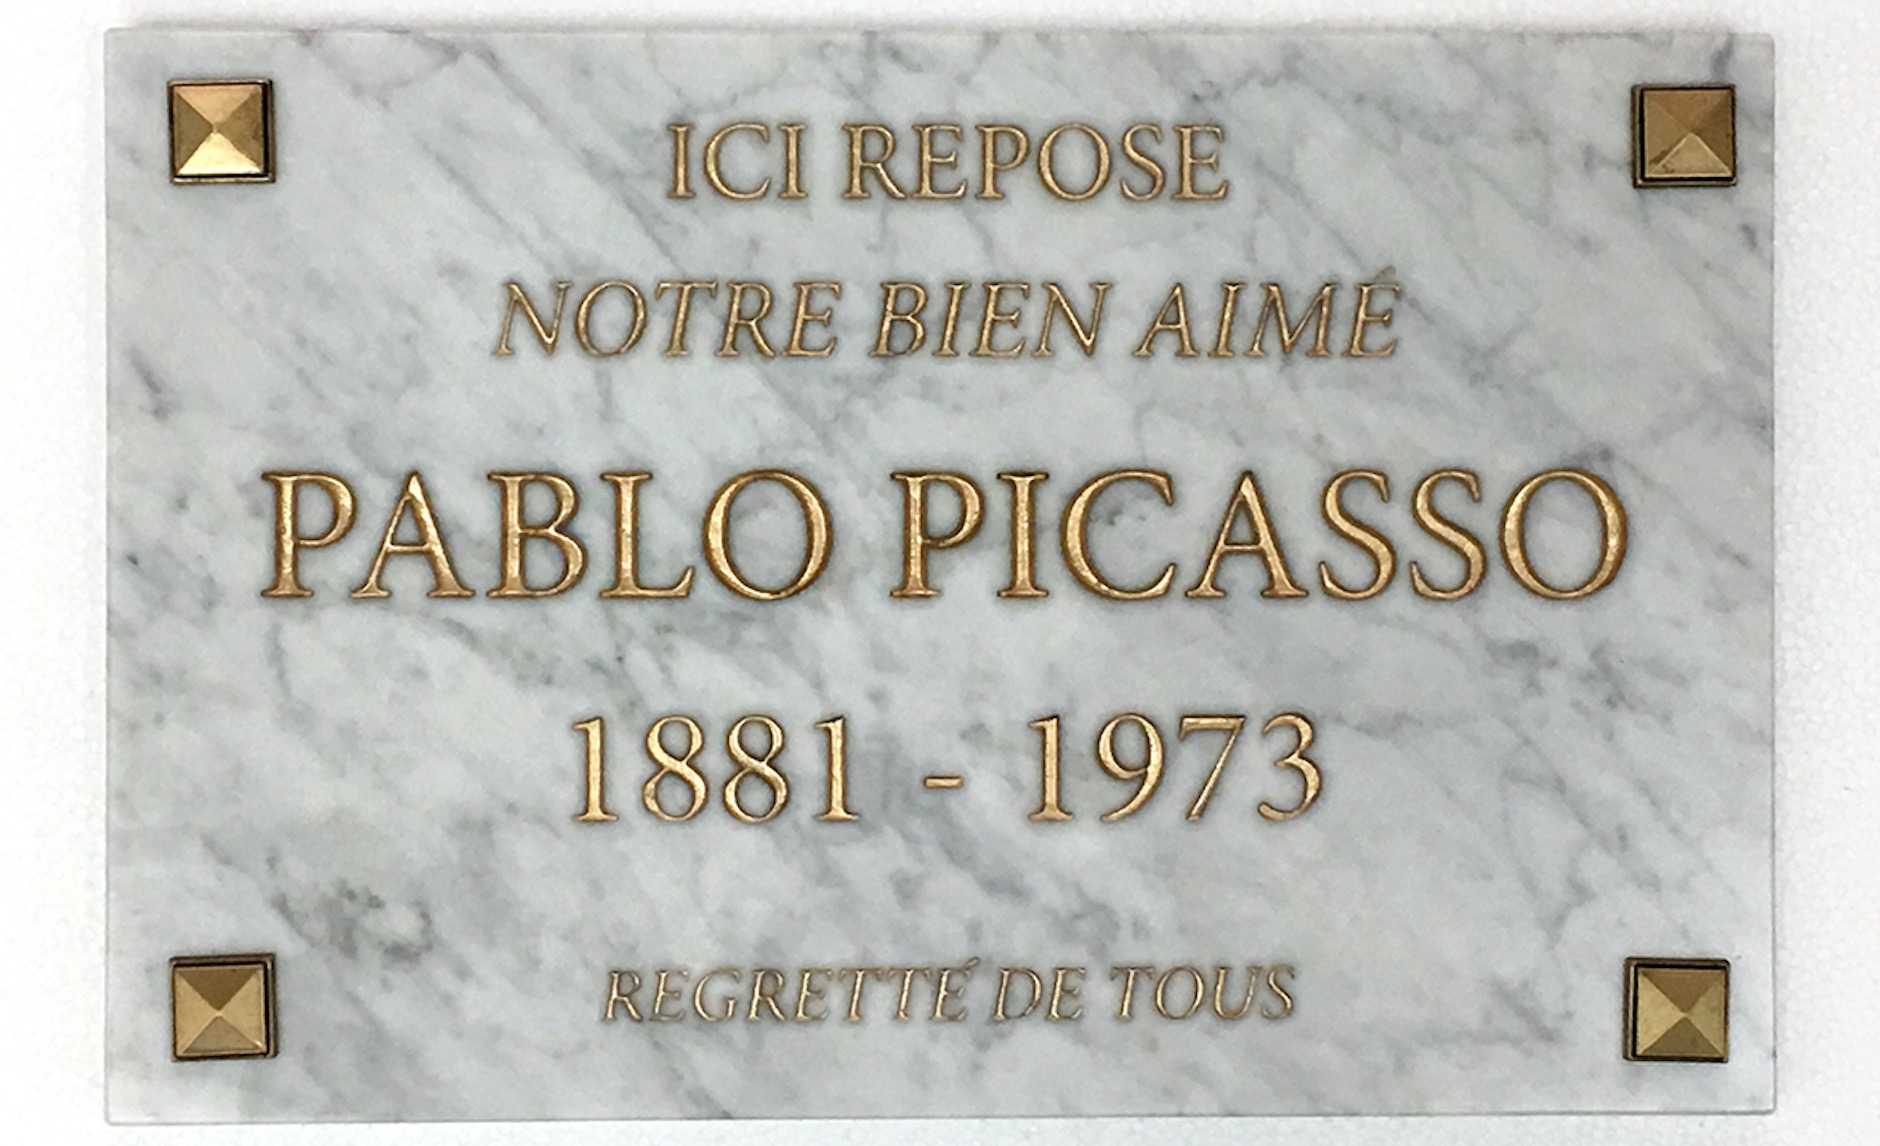 El cos de Picasso descansa a Màlaga. Fes-t’hi una selfie